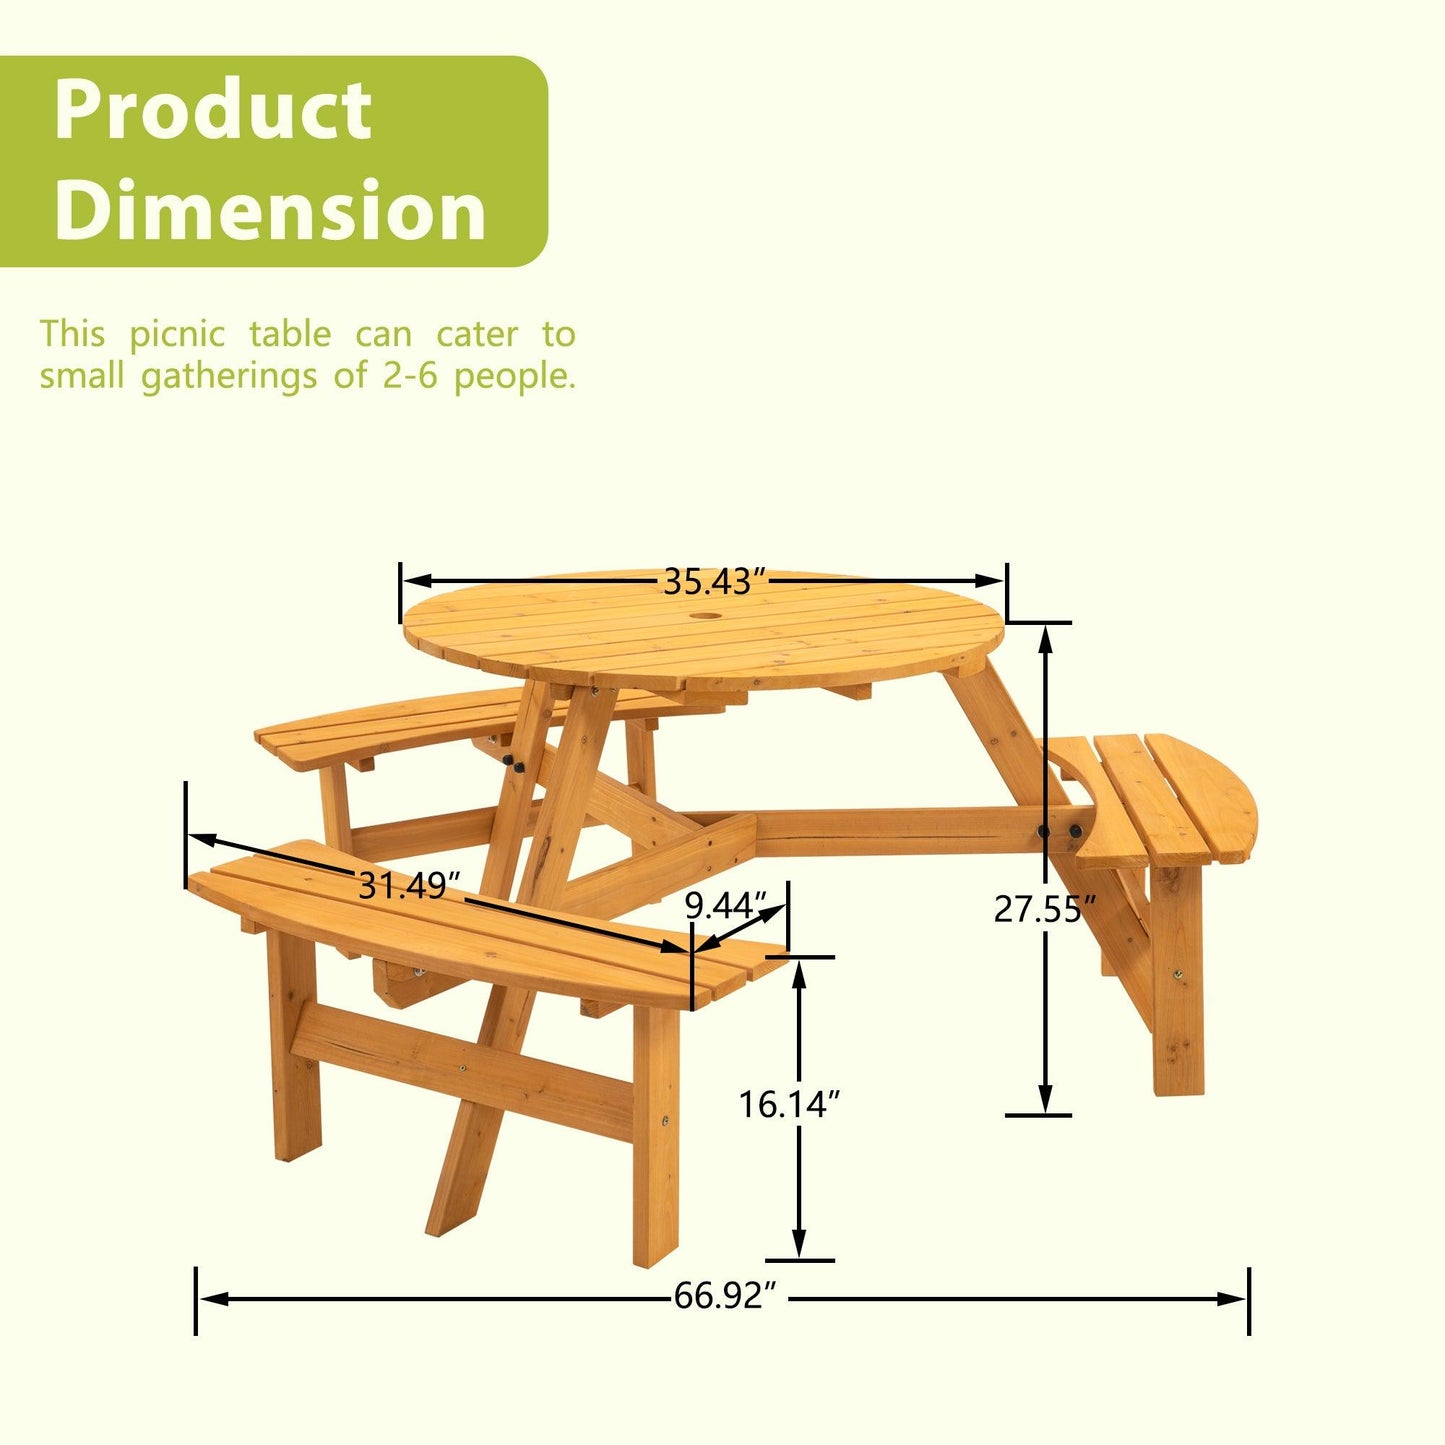 6-Person Circular Outdoor Wooden Picnic Table for Patio, Backyard, Garden, DIY w/ 3 Built-in Benches, 1720lb Capacity - Natural - FurniFindUSA